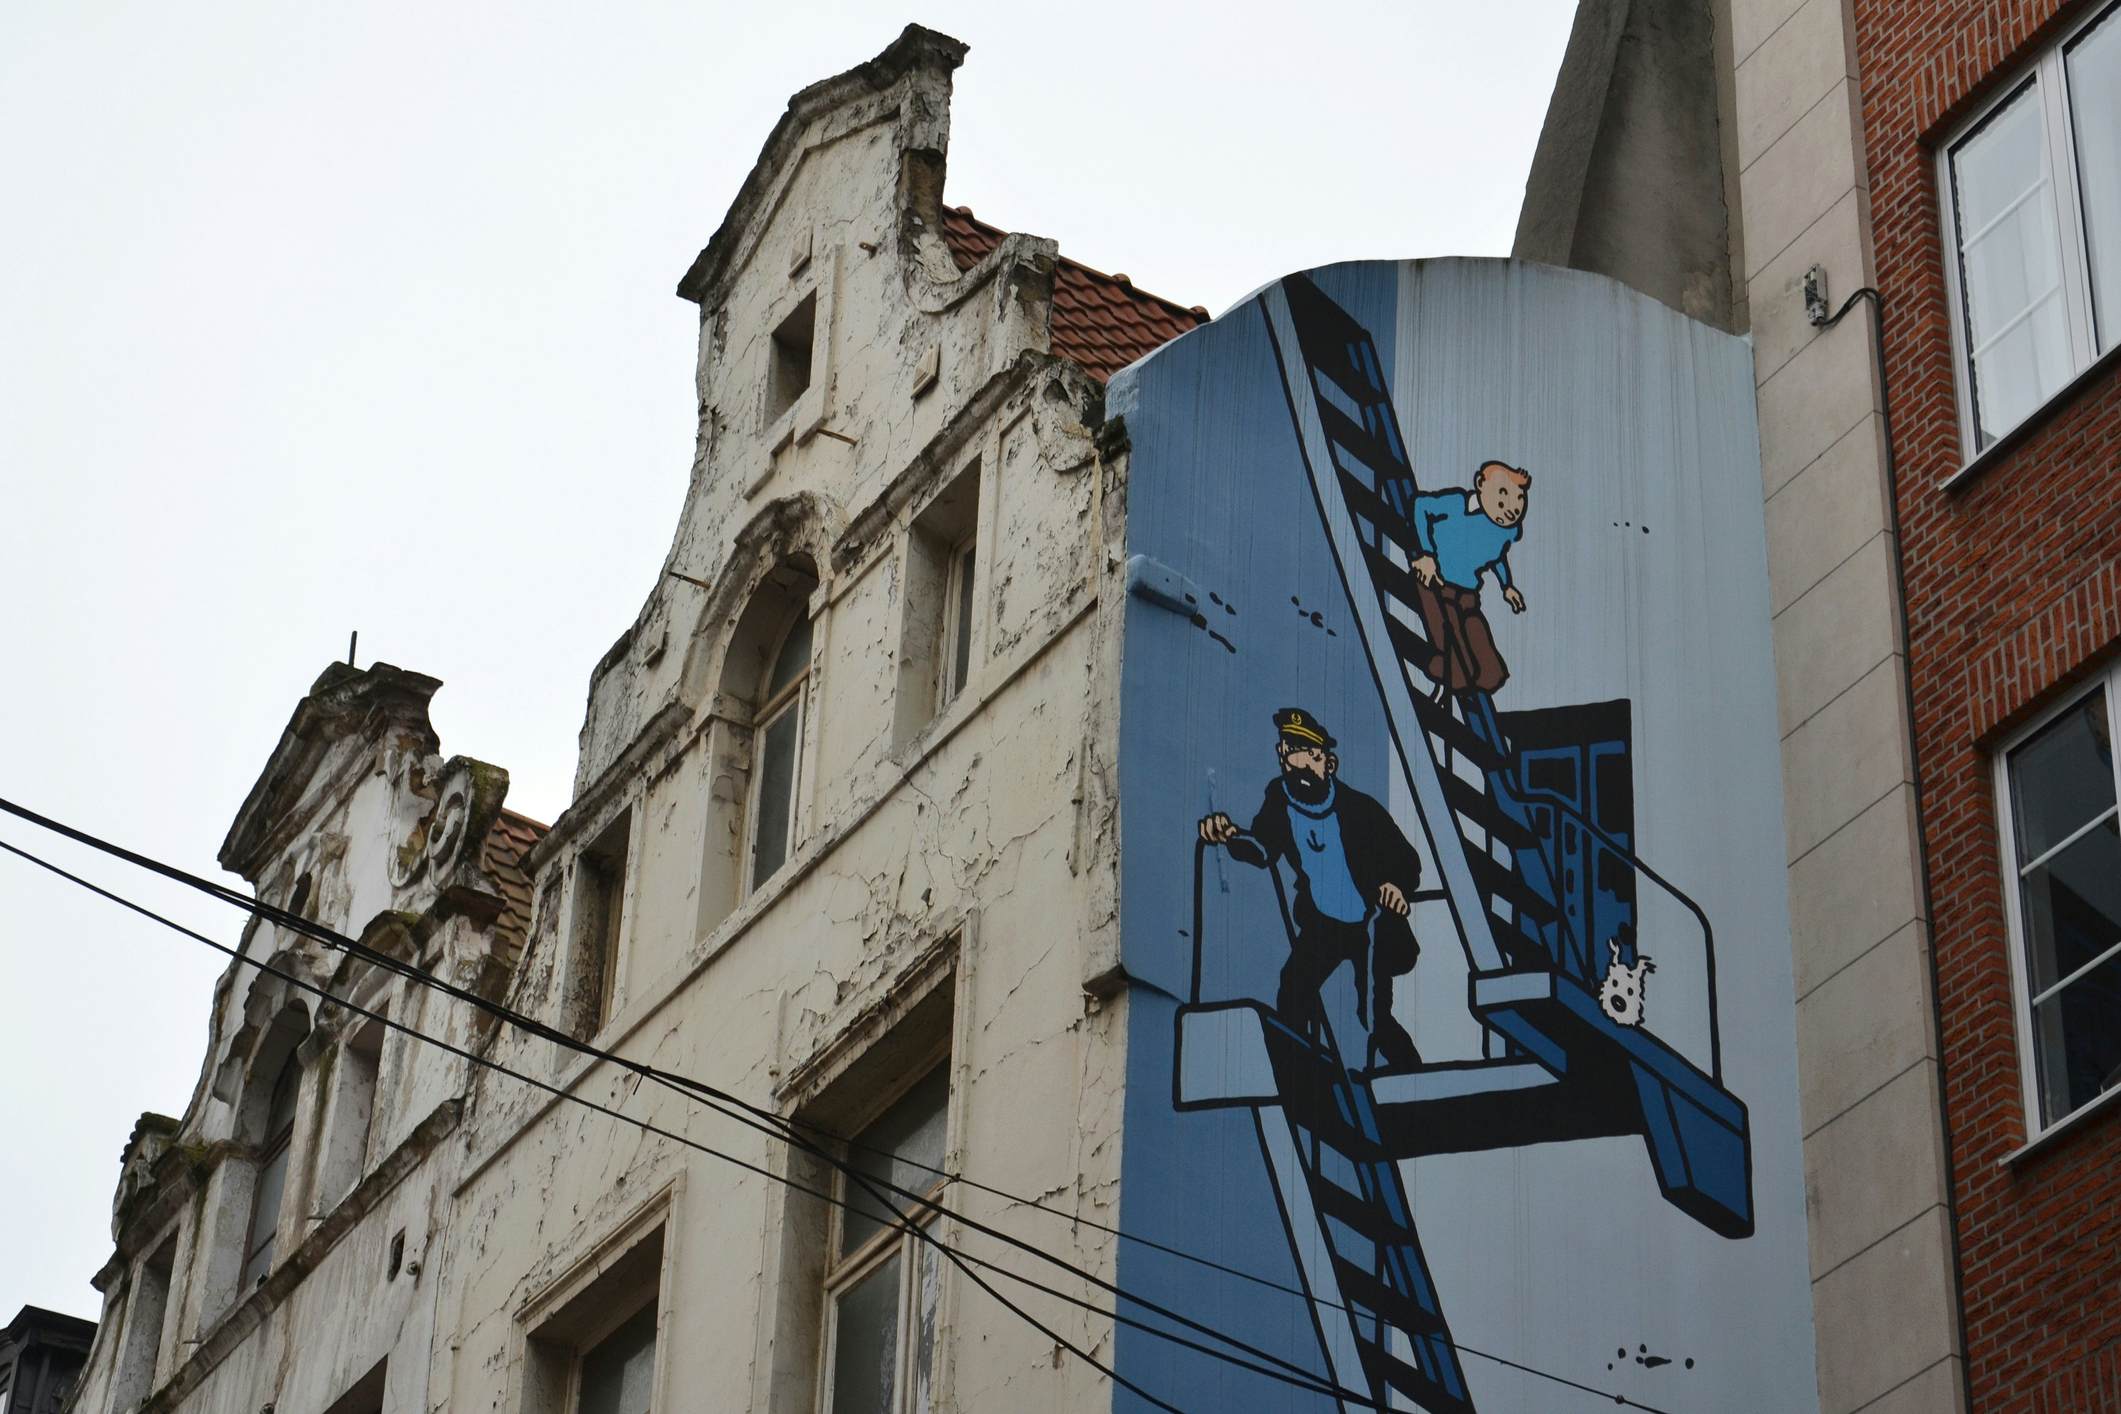 Tintin Mural